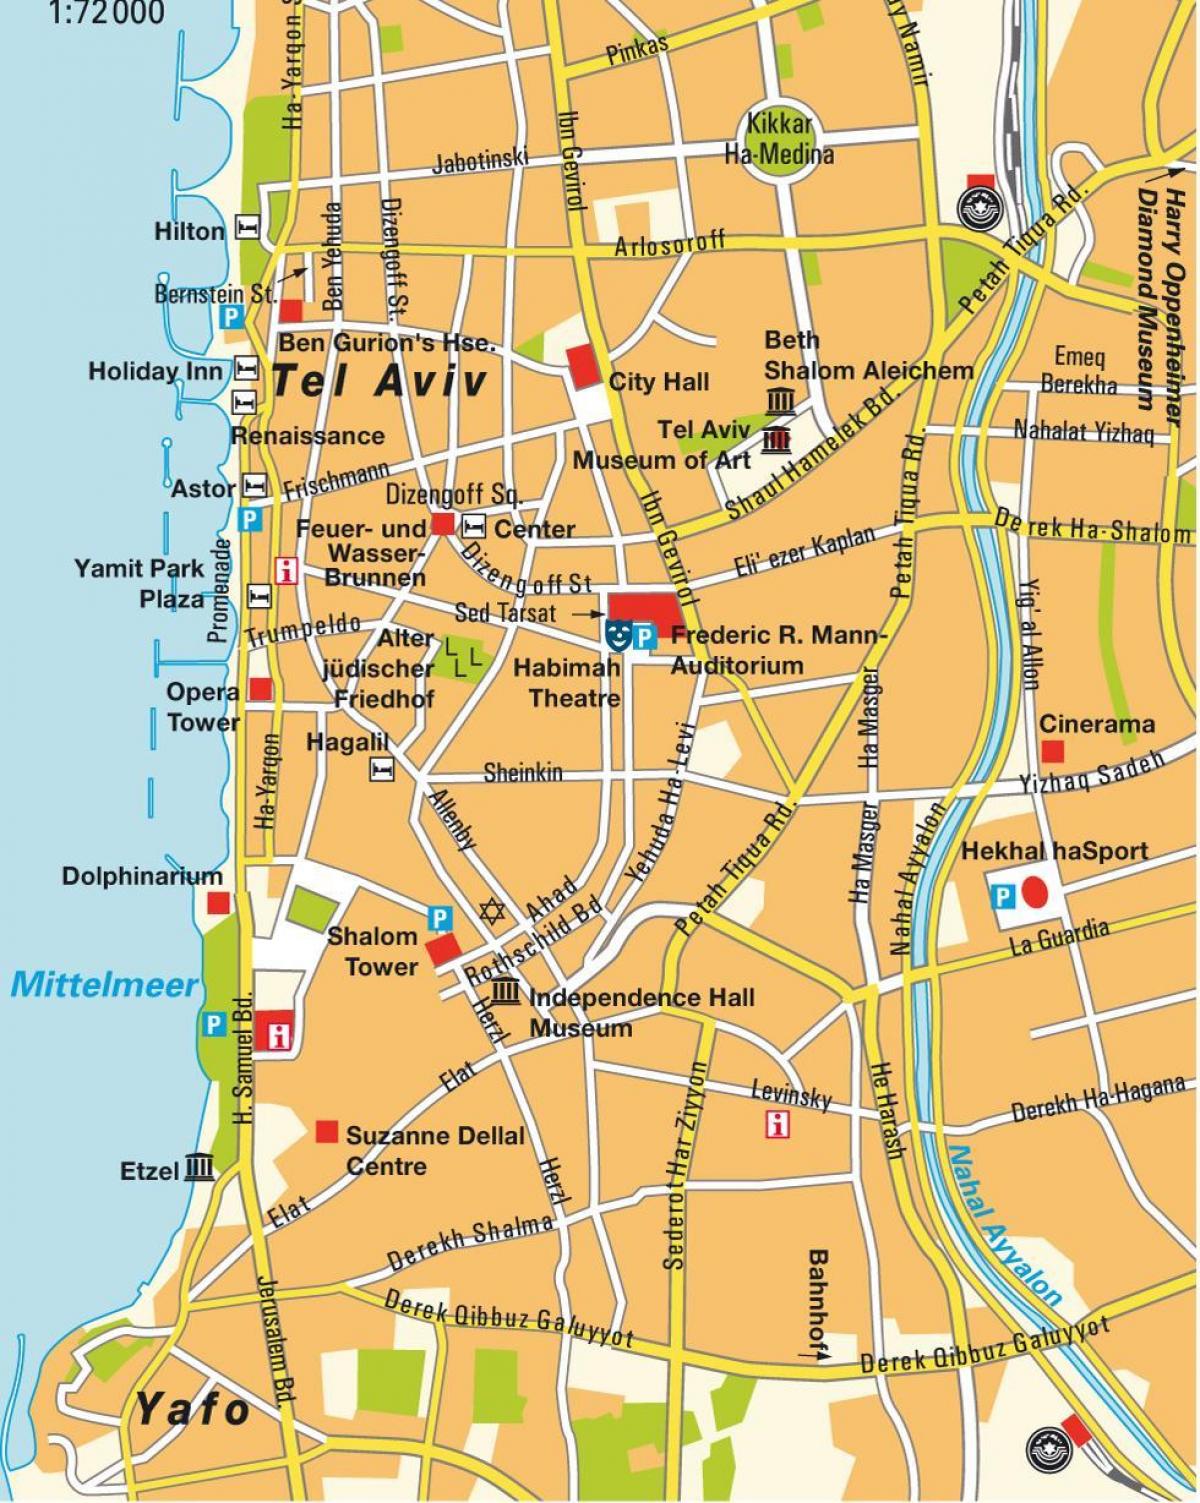 χάρτης του Τελ Αβίβ περιοχή